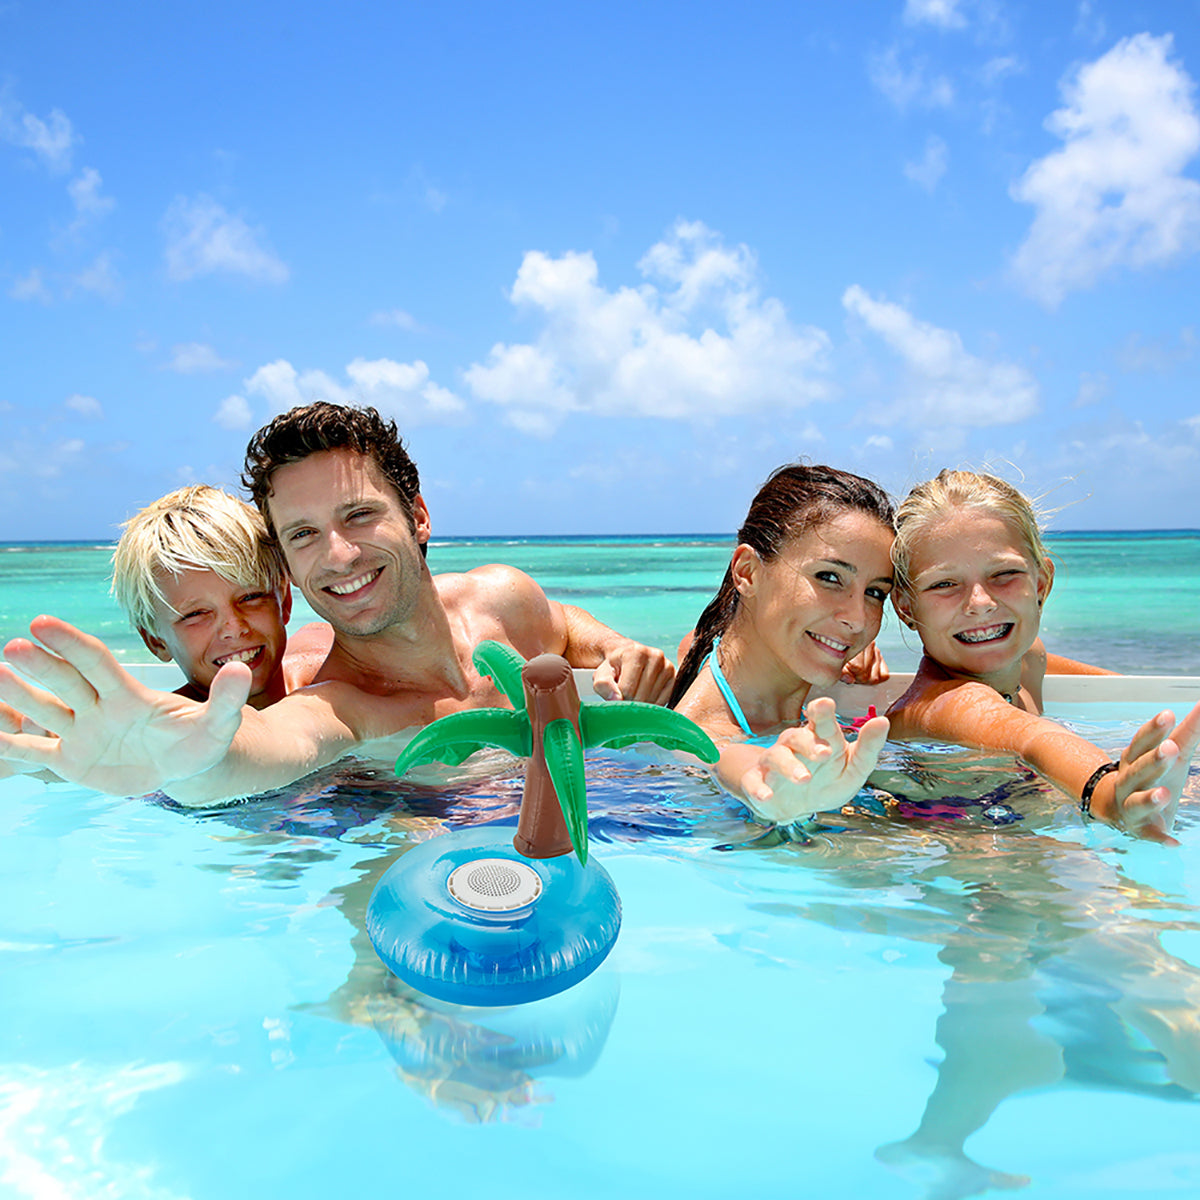 Floatie Island Waterproof Wireless Speaker